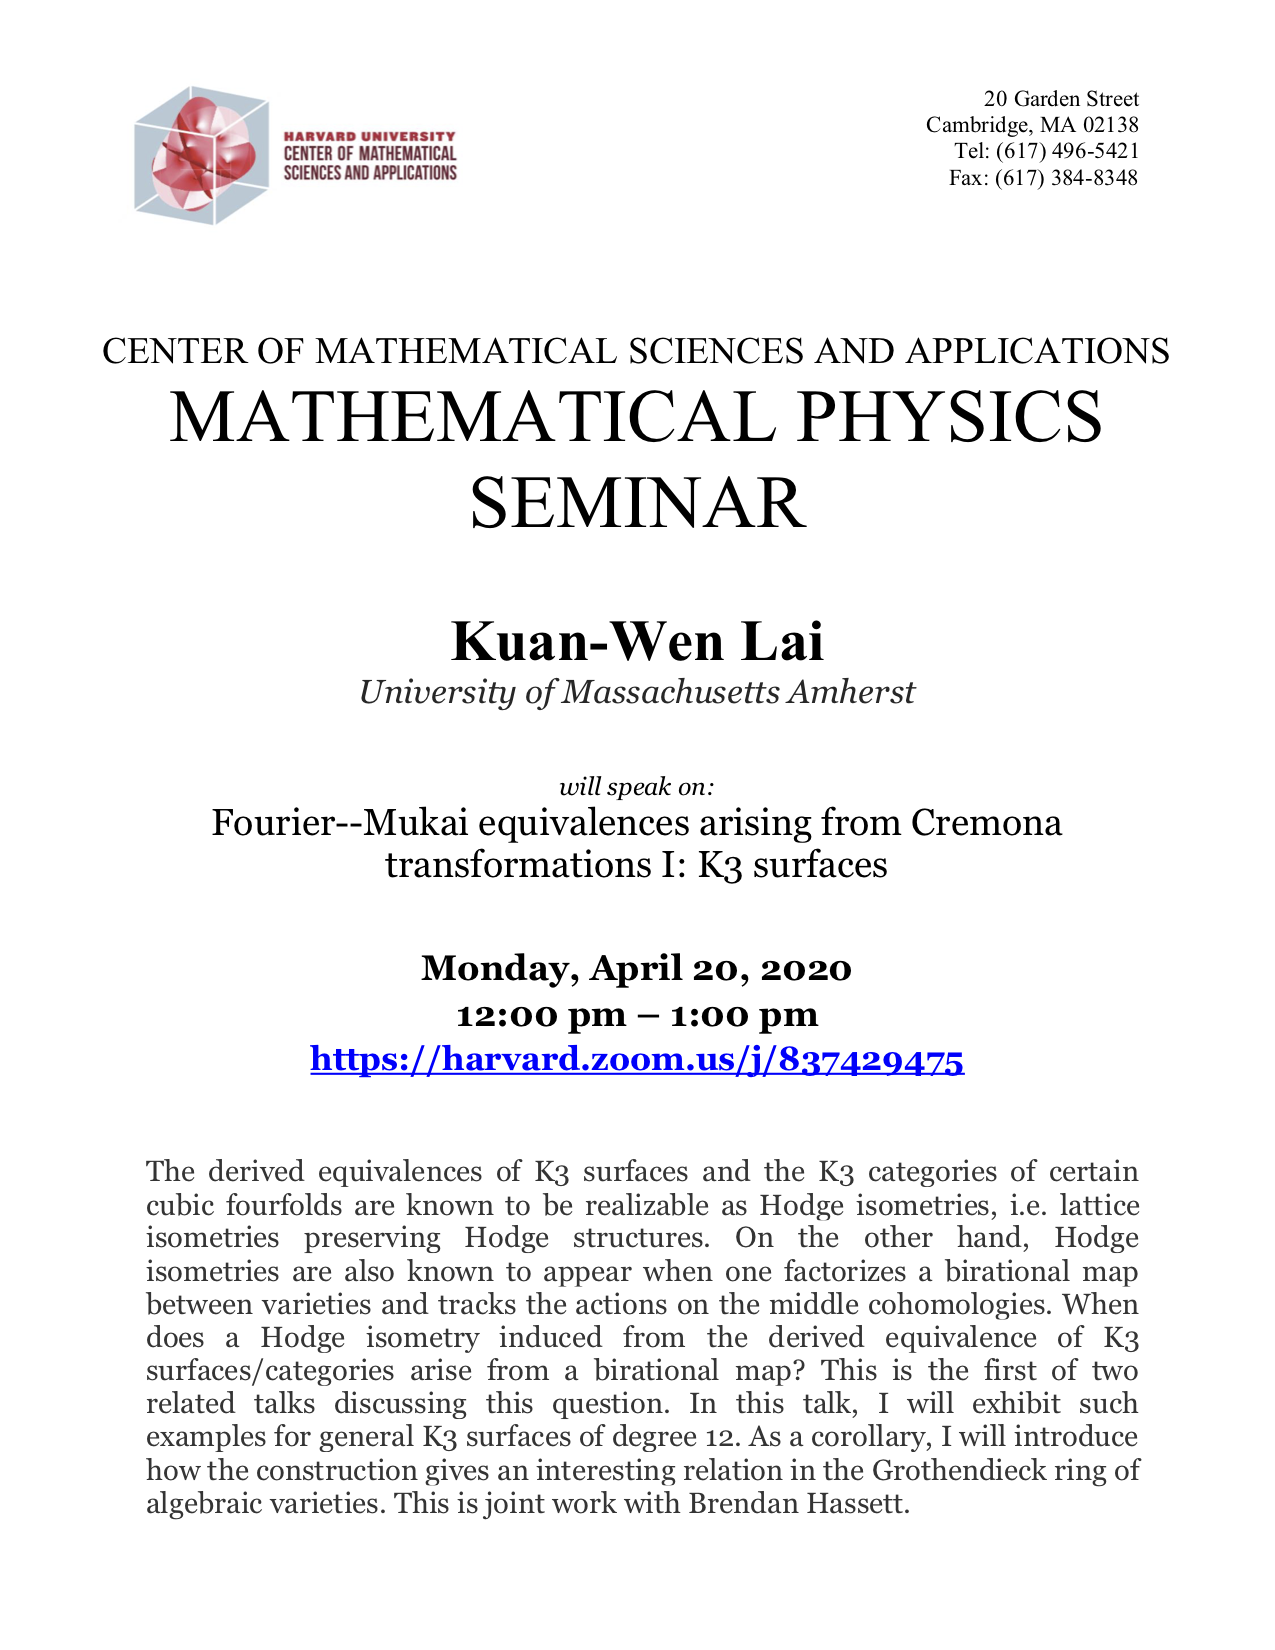 CMSA-Mathematical-Physics-04.20.20